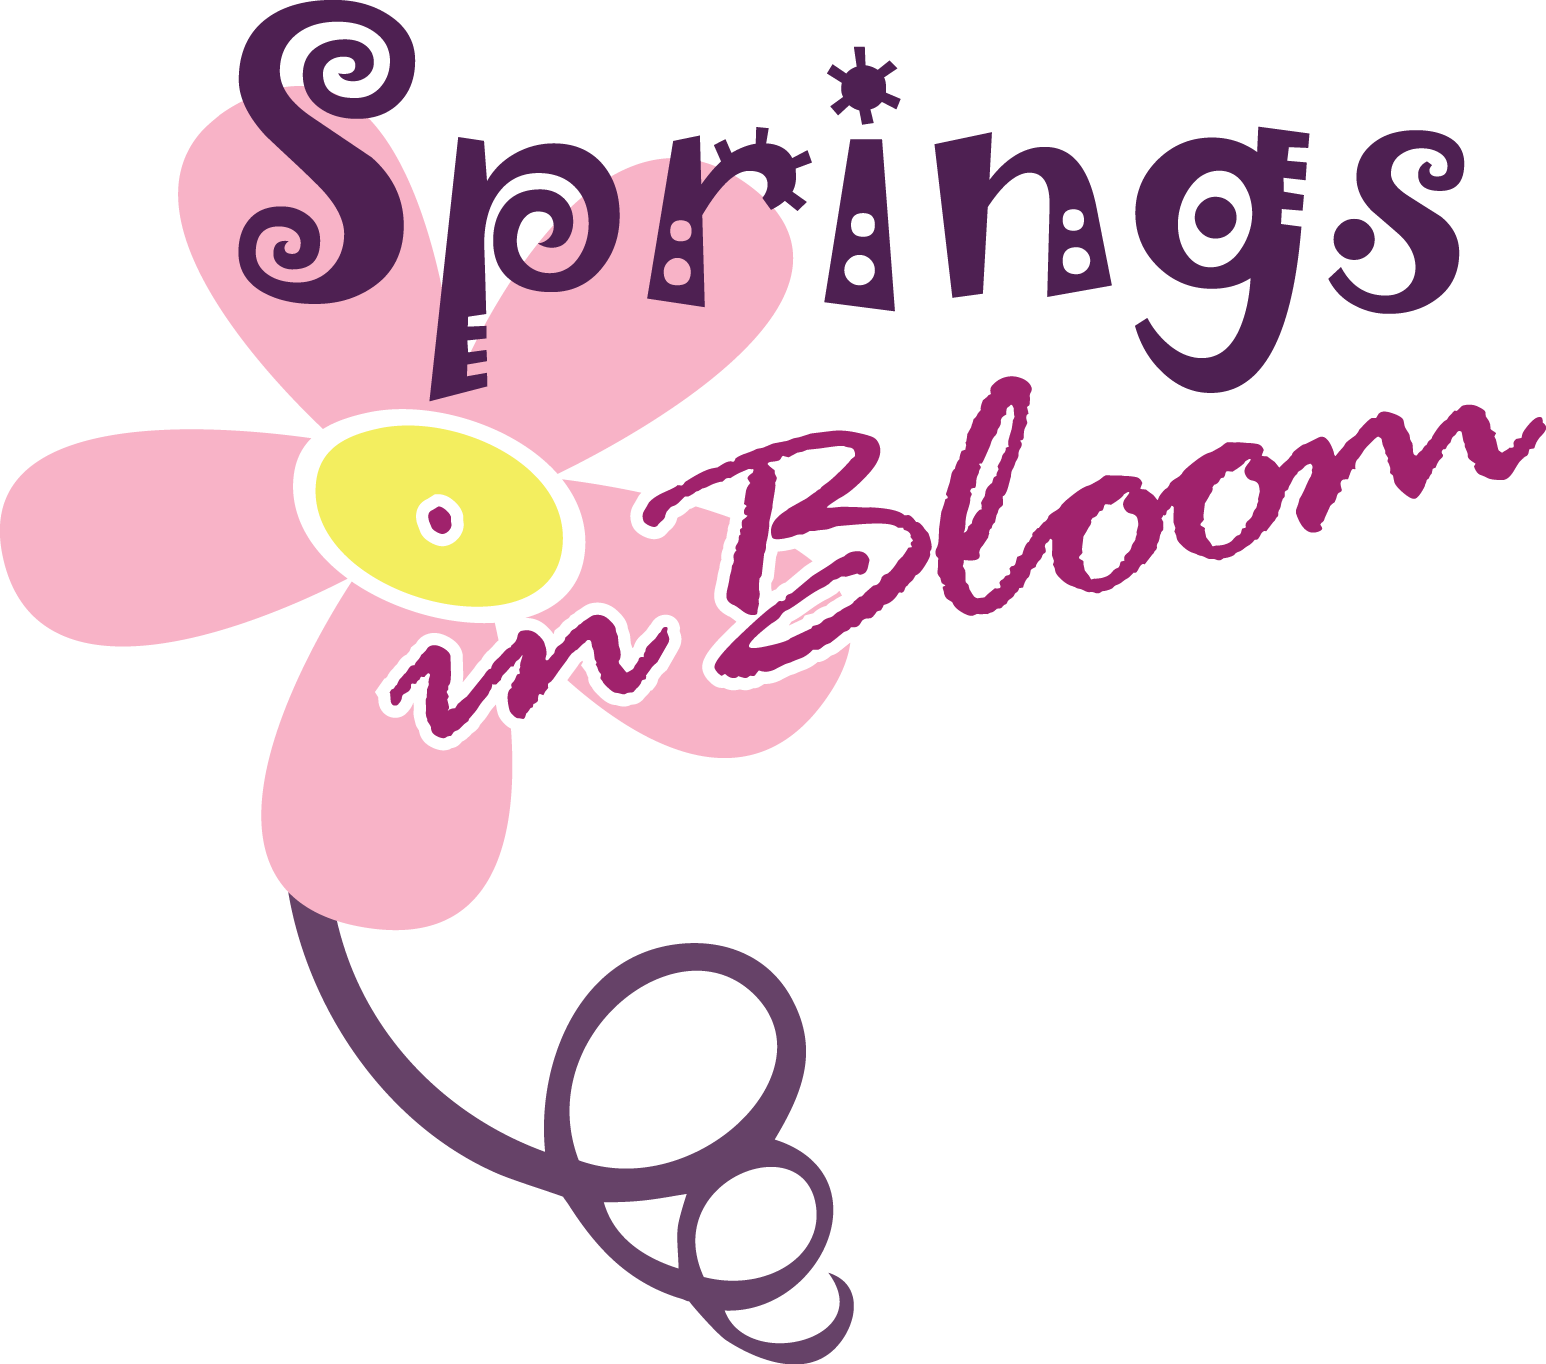 Springs in Bloom